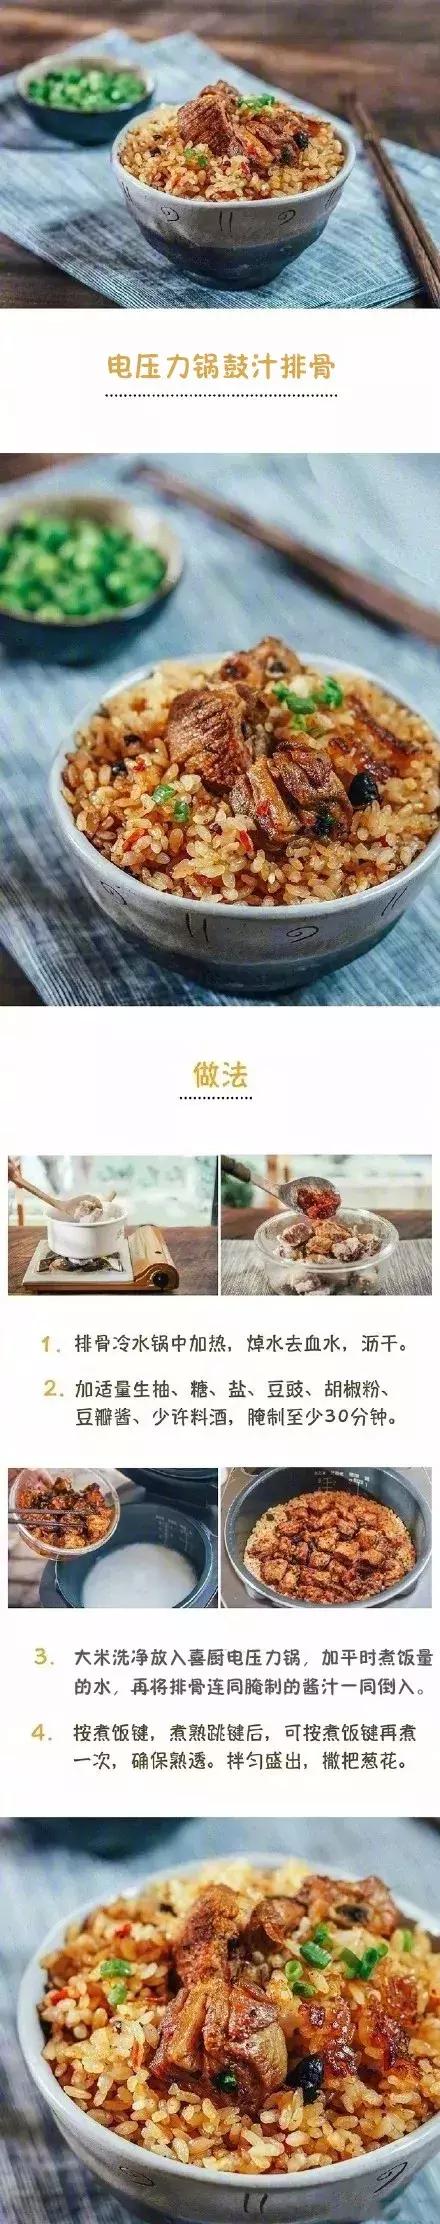 懒人食谱丨一口电压力锅烹制的9款美味